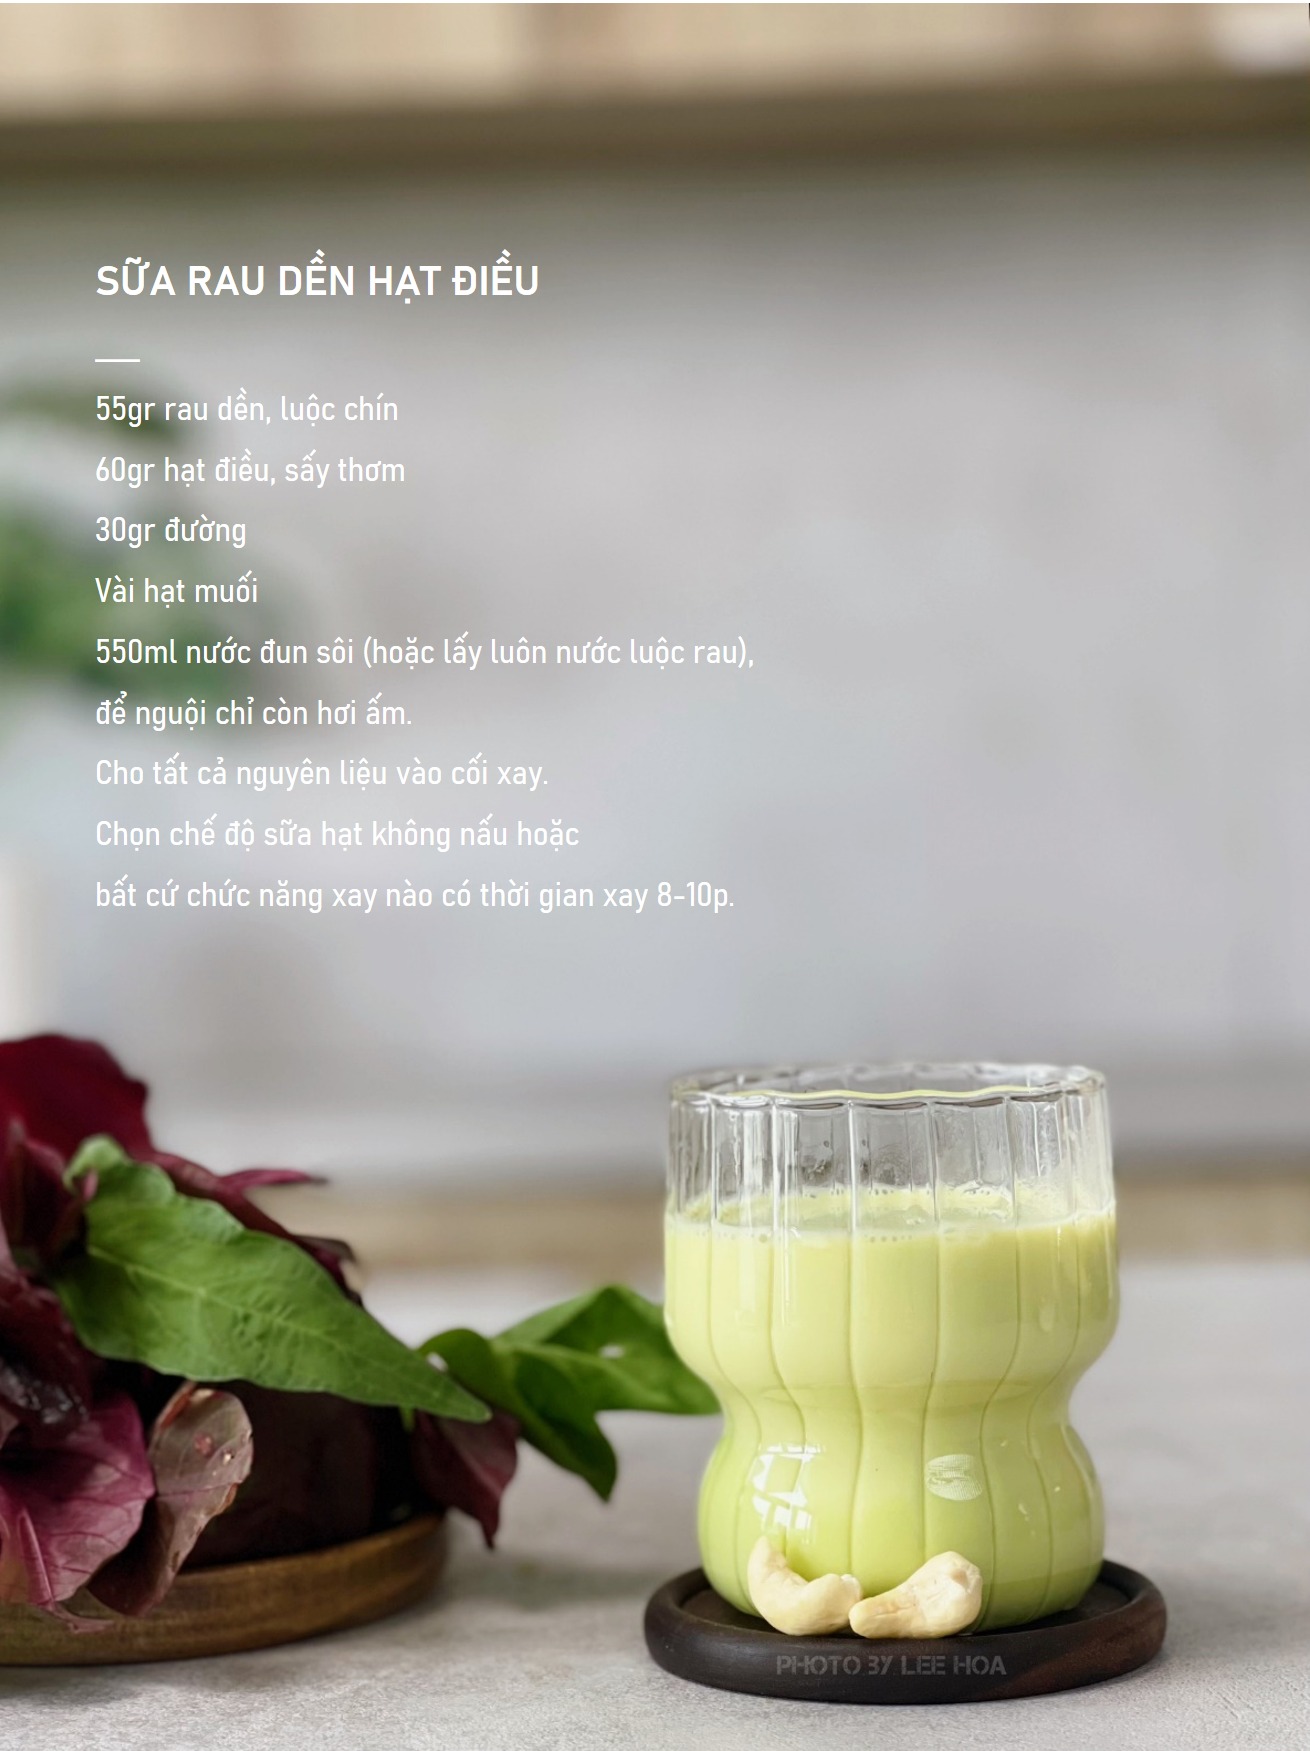 Mẹ chăm làm sữa hạt kết hợp rau xanh, củ, quả cho các con, thành quả là cốc sữa đẹp mắt, ngon miệng, dinh dưỡng - Ảnh 11.